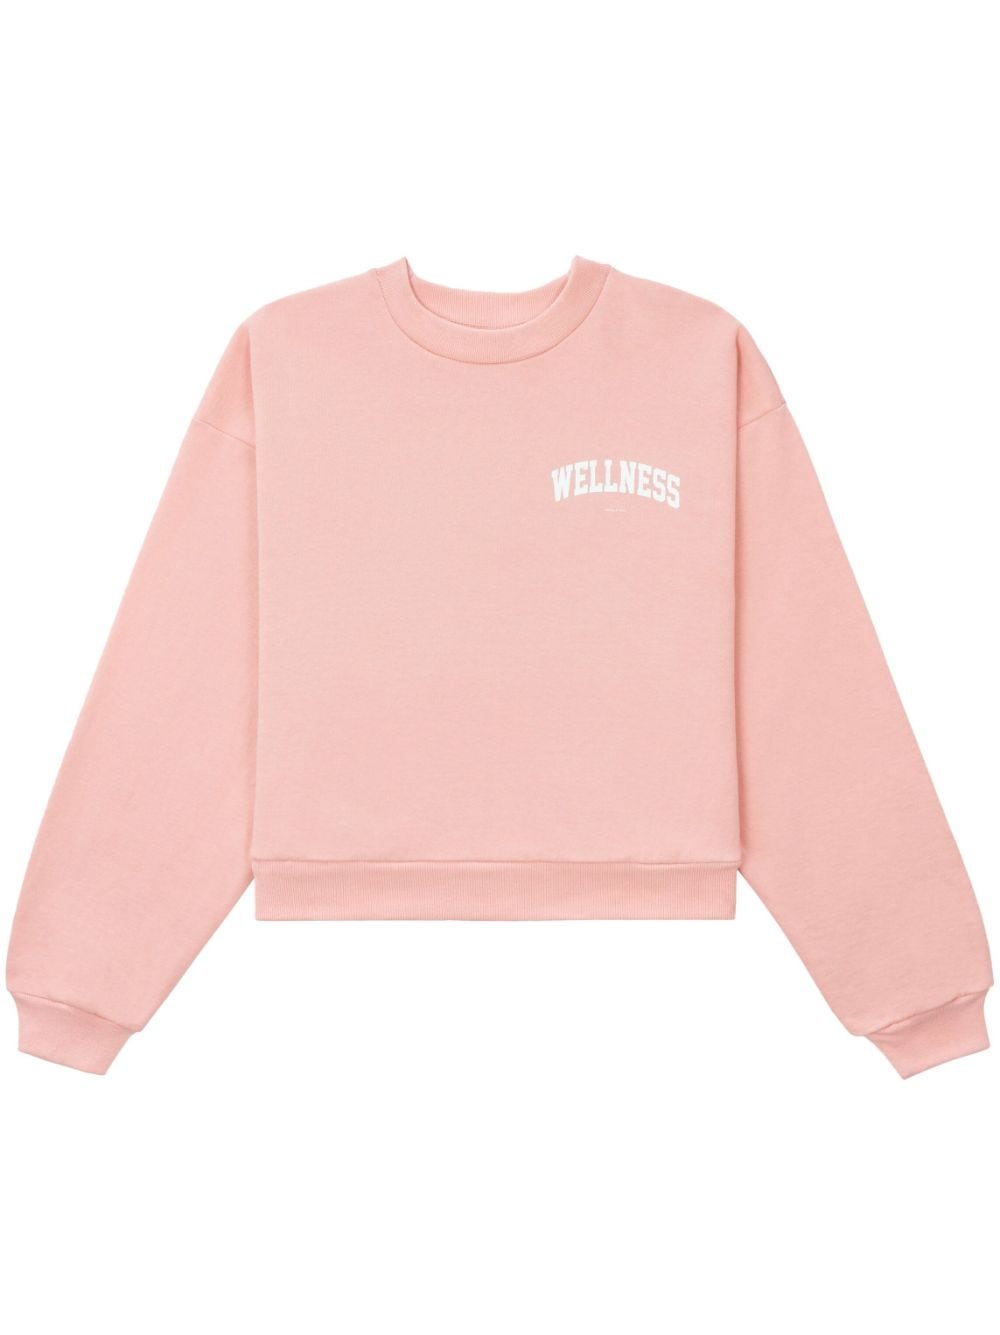 Sporty & Rich Wellness Ivy cropped sweatshirt - Pink von Sporty & Rich